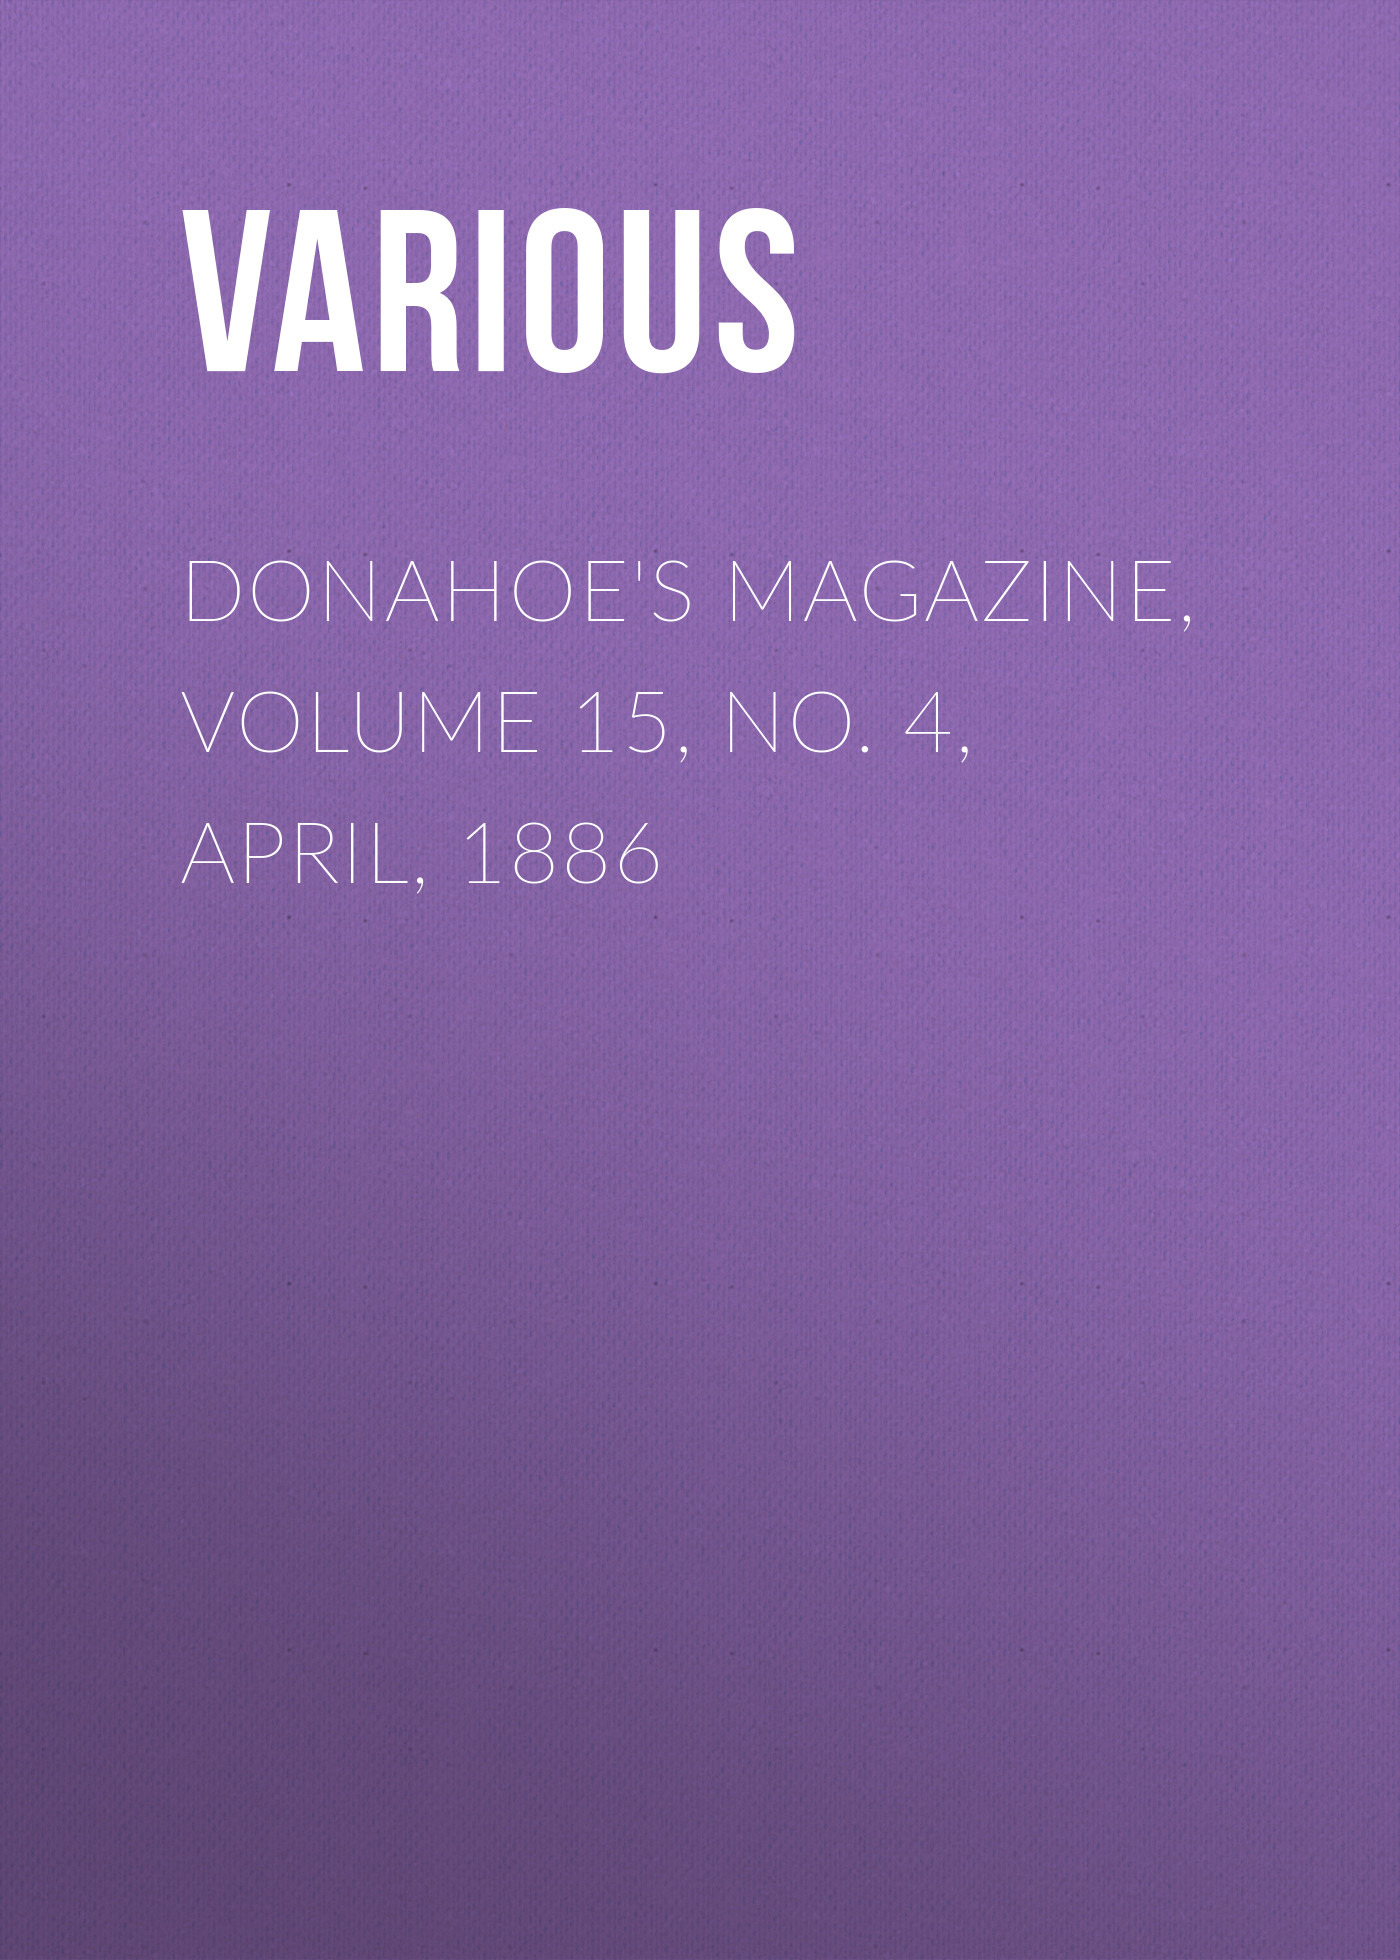 Книга Donahoe's Magazine, Volume 15, No. 4, April, 1886 из серии , созданная  Various, может относится к жанру Журналы, Зарубежная образовательная литература. Стоимость электронной книги Donahoe's Magazine, Volume 15, No. 4, April, 1886 с идентификатором 25714849 составляет 0 руб.